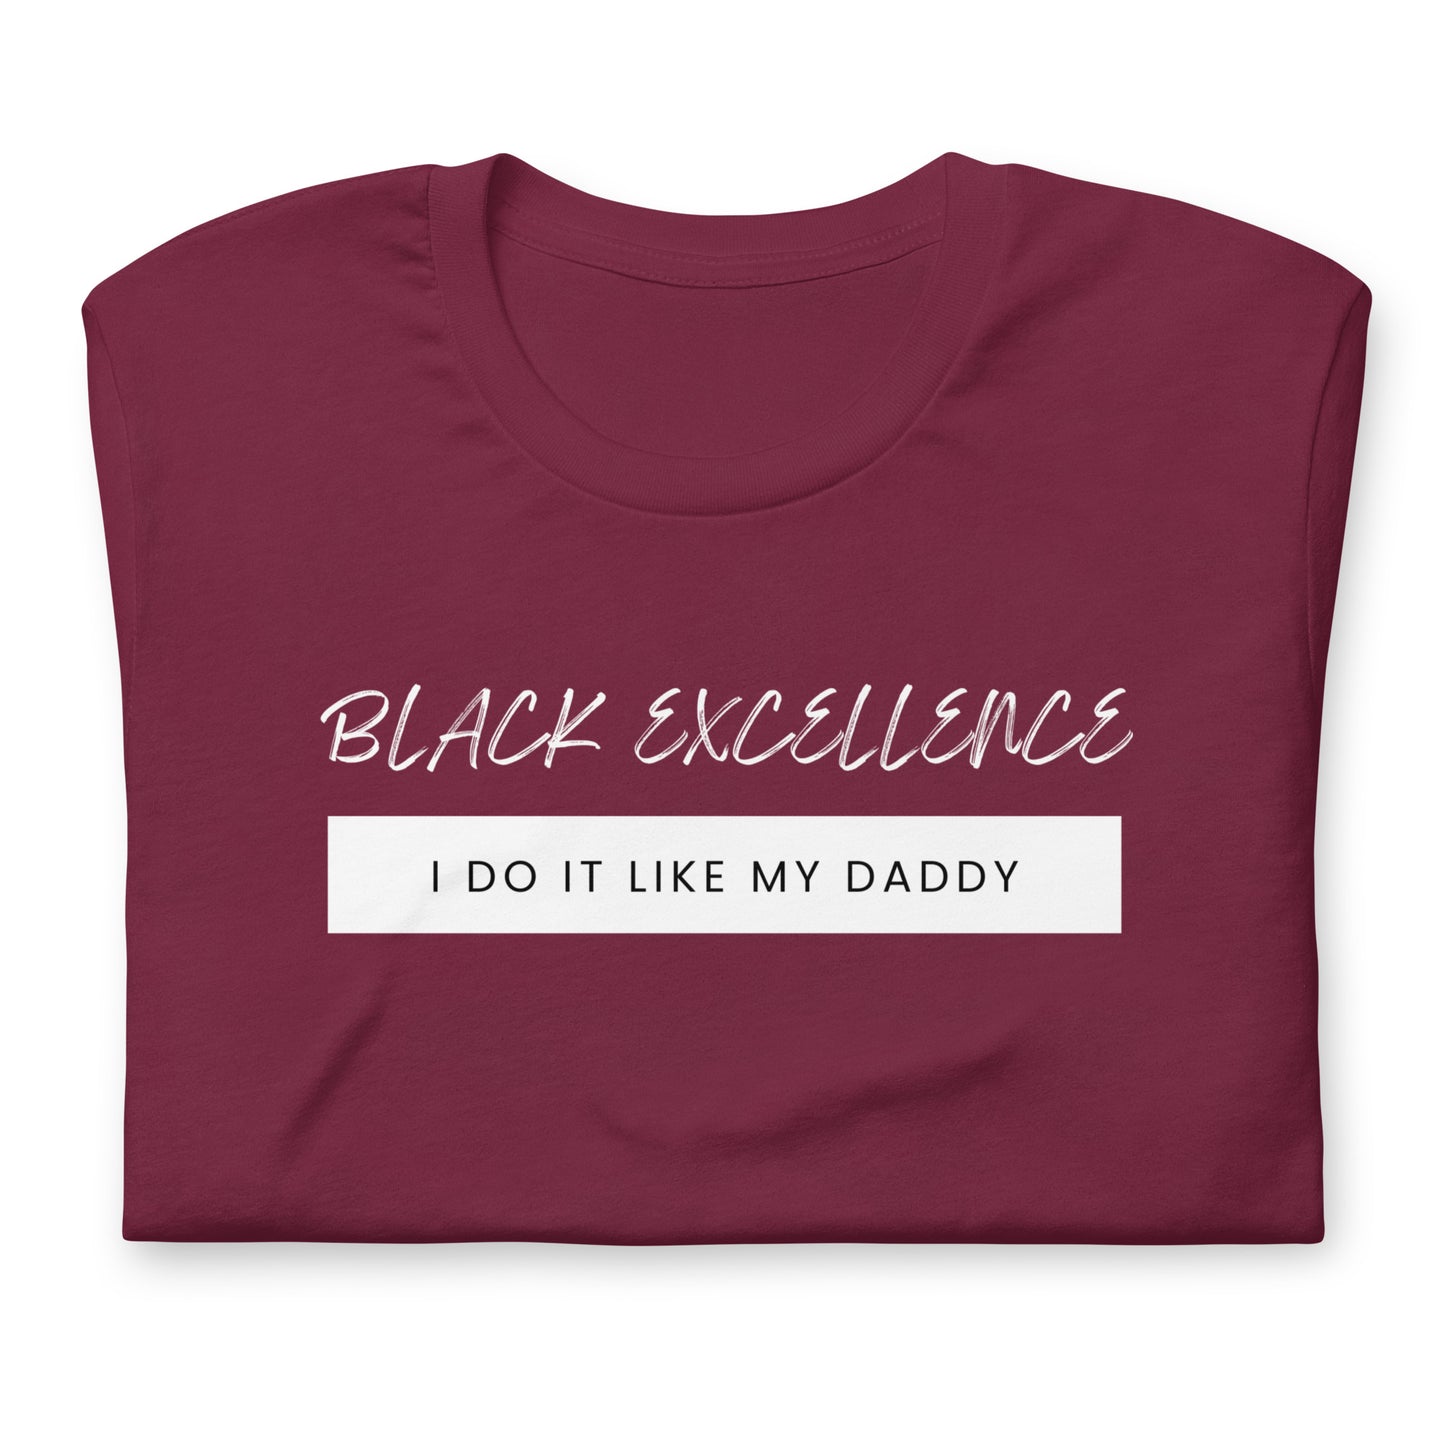 I Do It Like My Daddy t-shirt